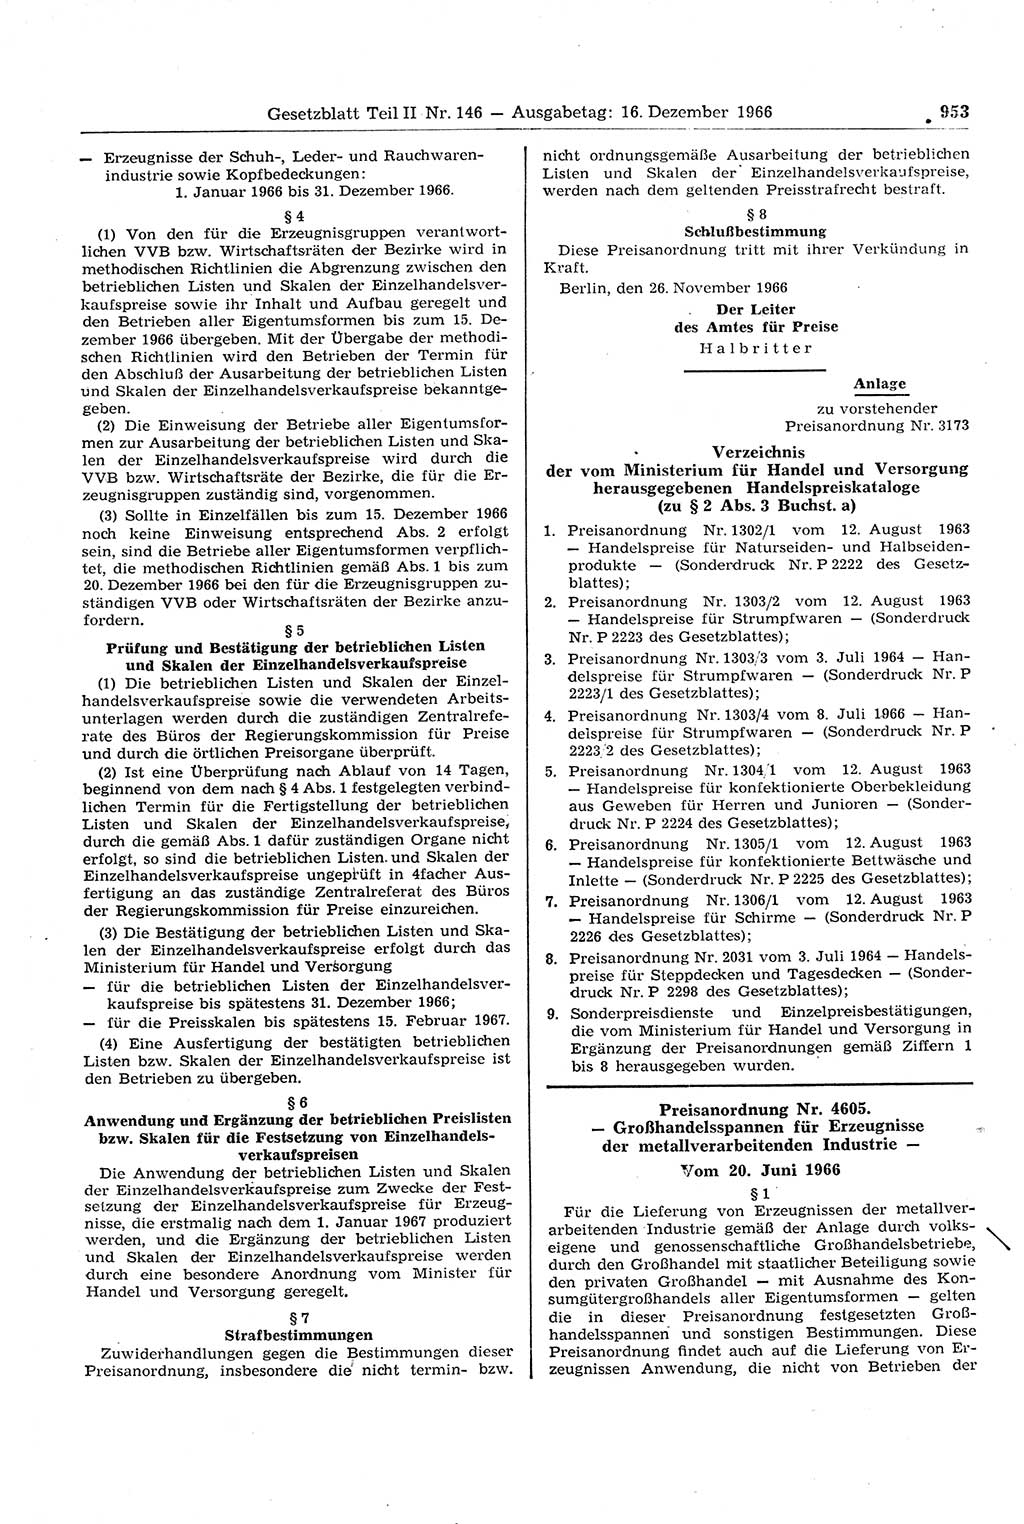 Gesetzblatt (GBl.) der Deutschen Demokratischen Republik (DDR) Teil ⅠⅠ 1966, Seite 953 (GBl. DDR ⅠⅠ 1966, S. 953)